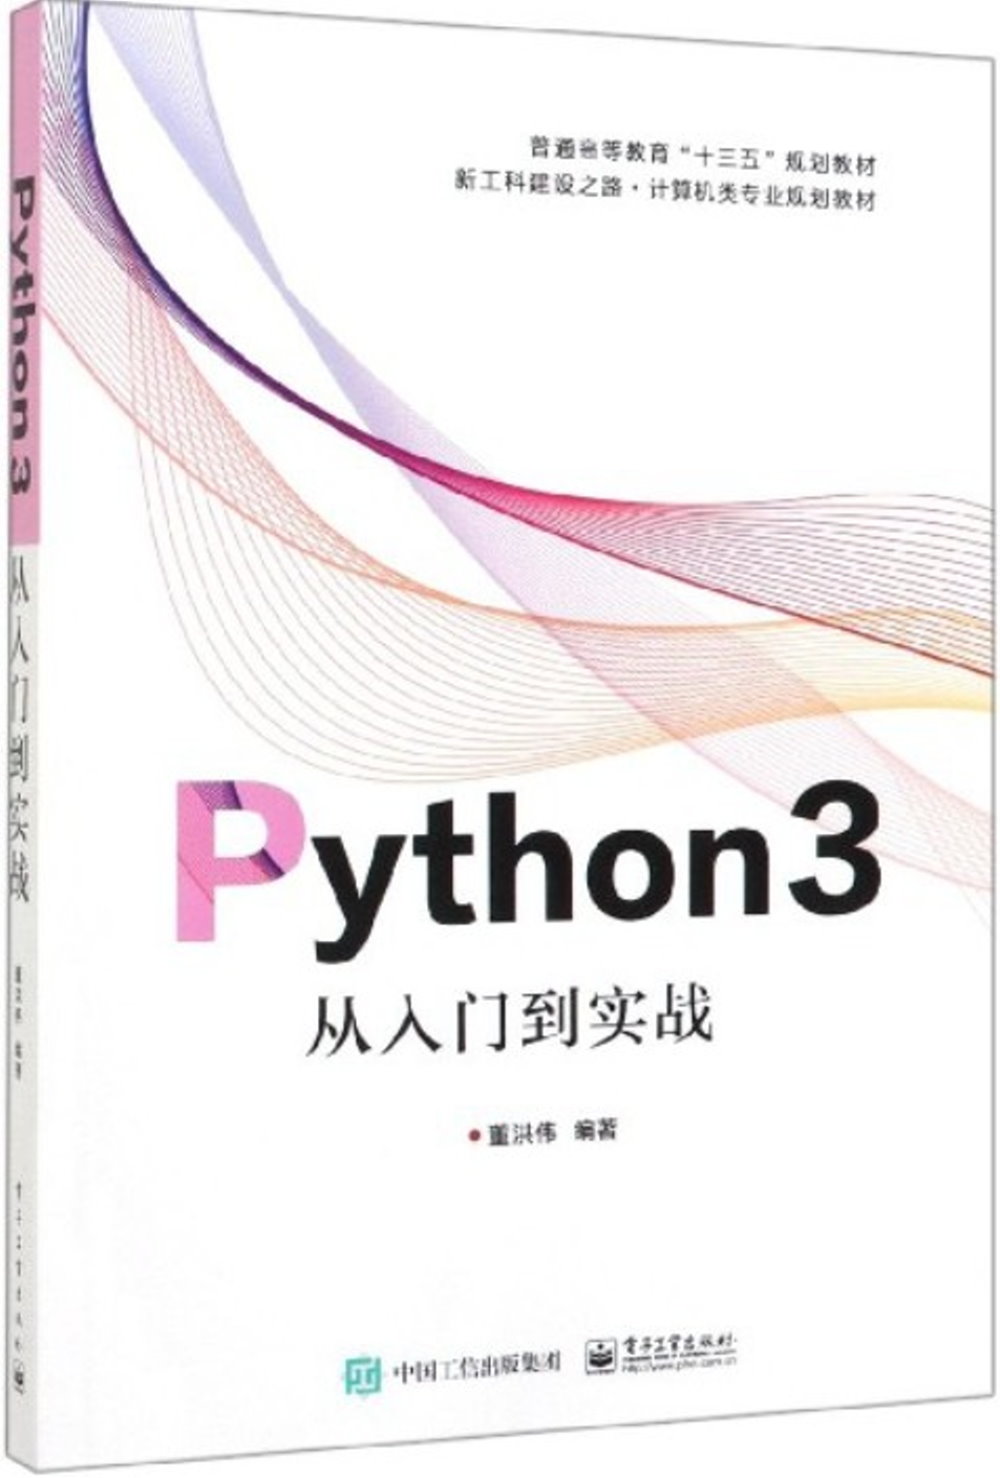 Python3從入門到實戰